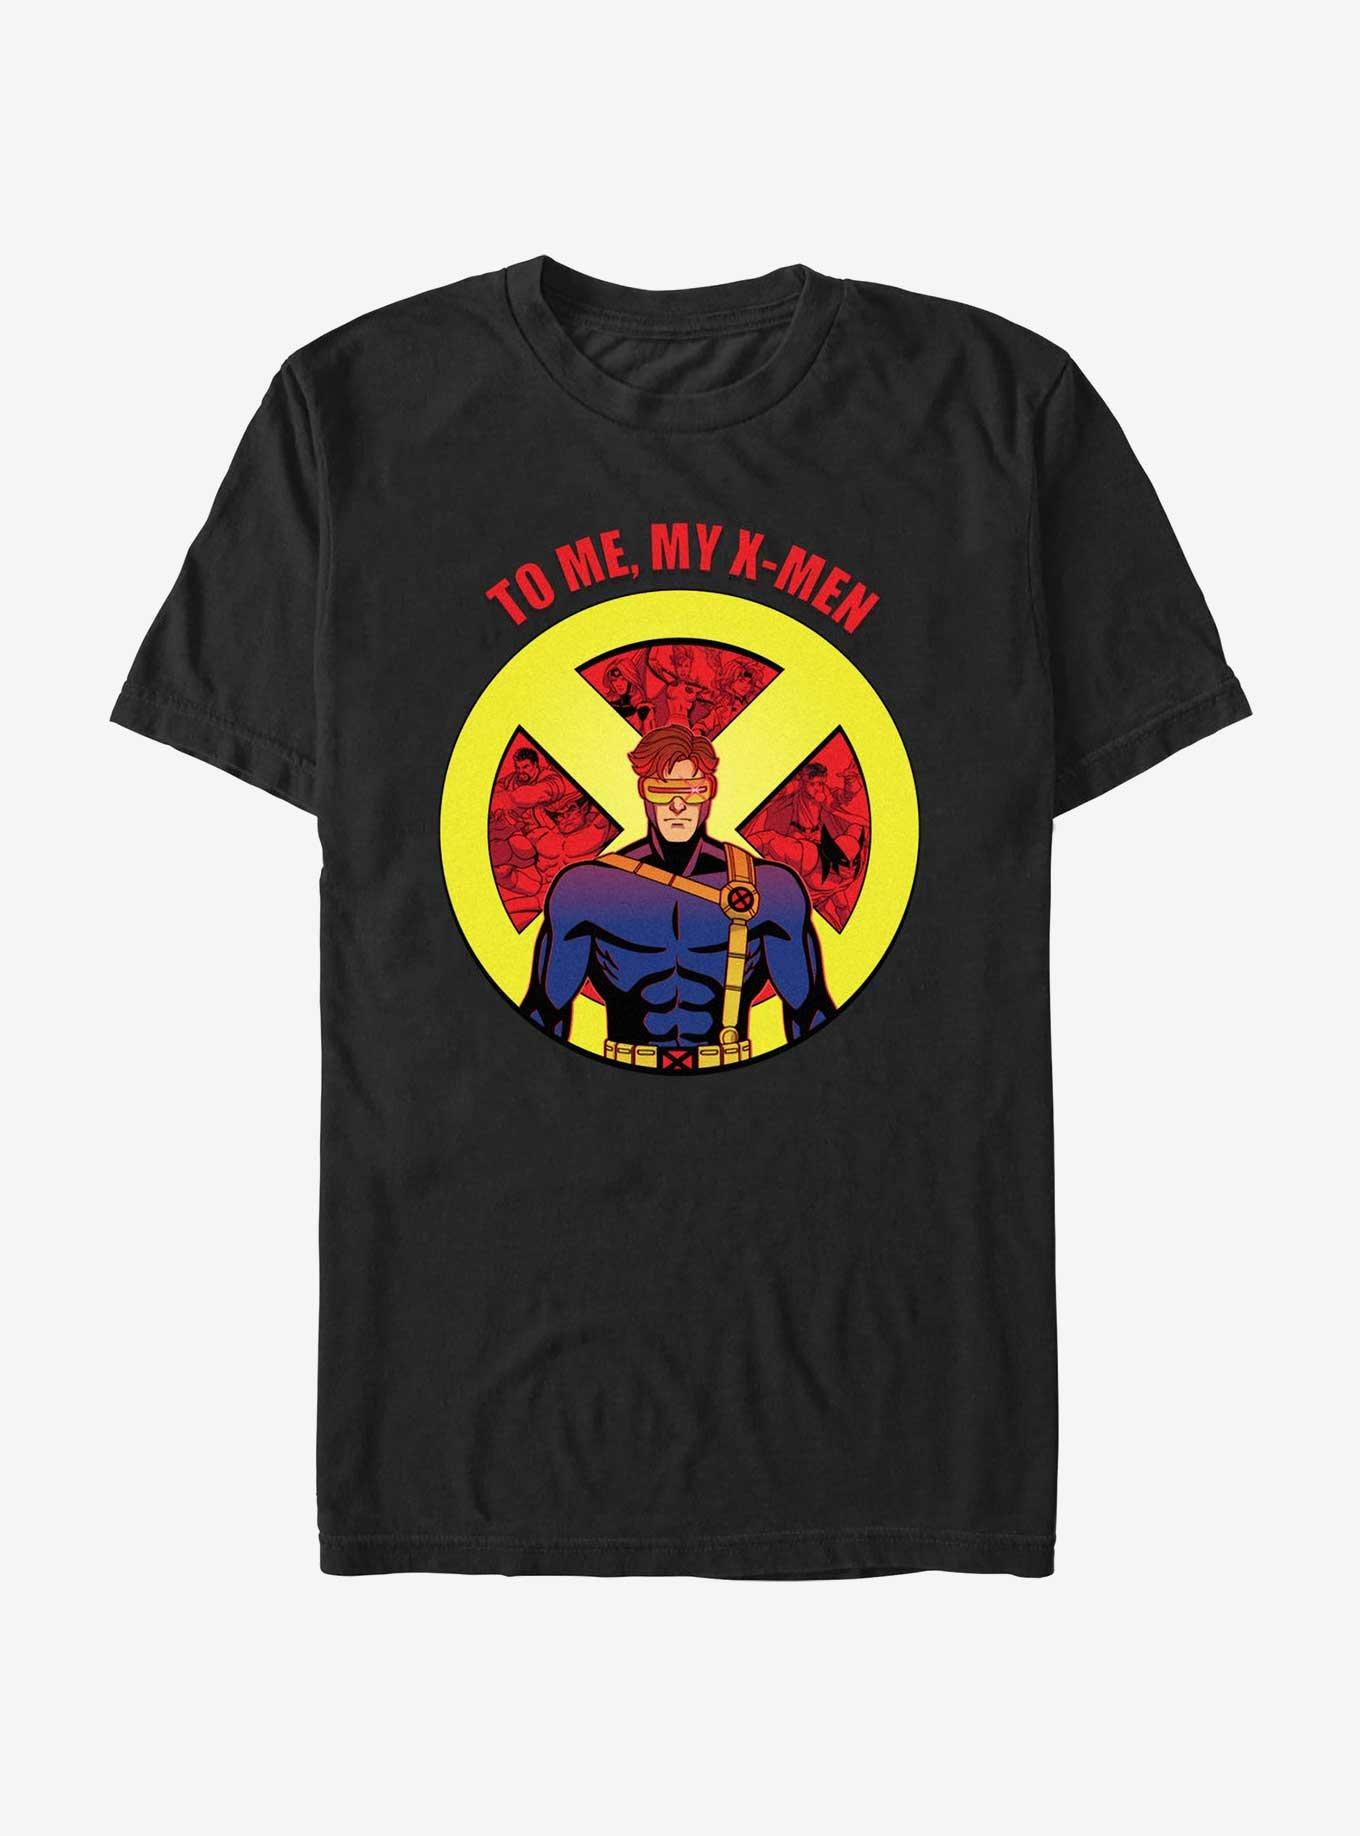 Marvel X-Men '97 To Me My X-Men Cyclops T-Shirt, BLACK, hi-res